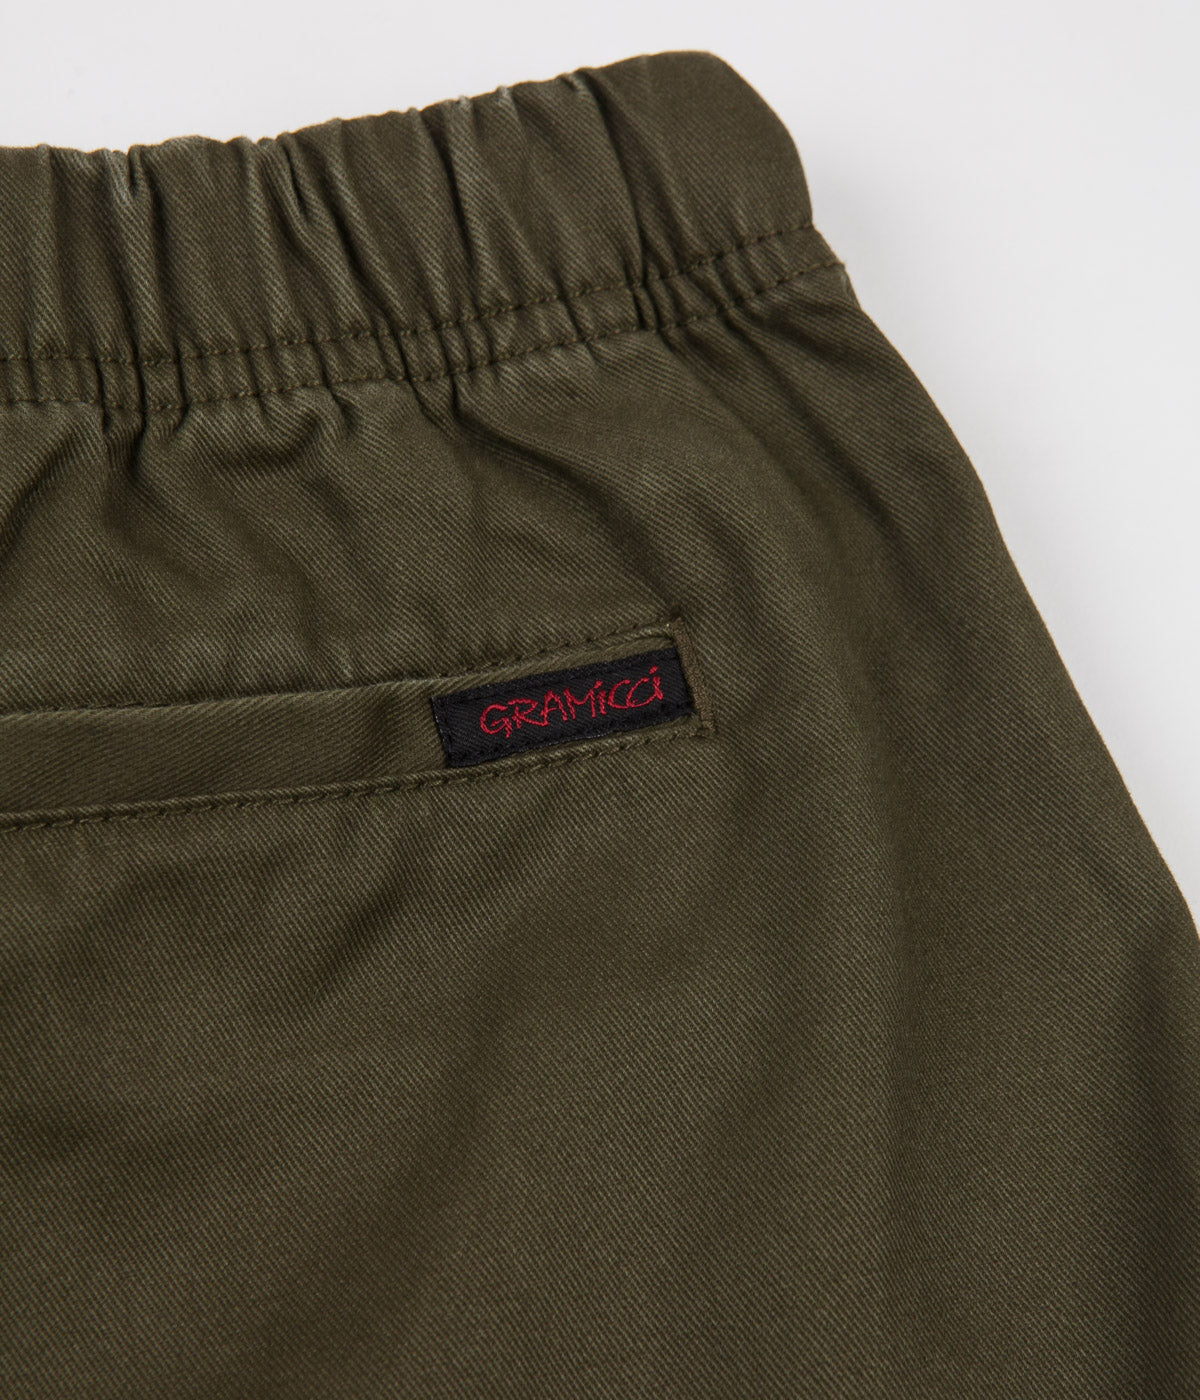 Gramicci Original G Shorts - Olive Stone | Flatspot